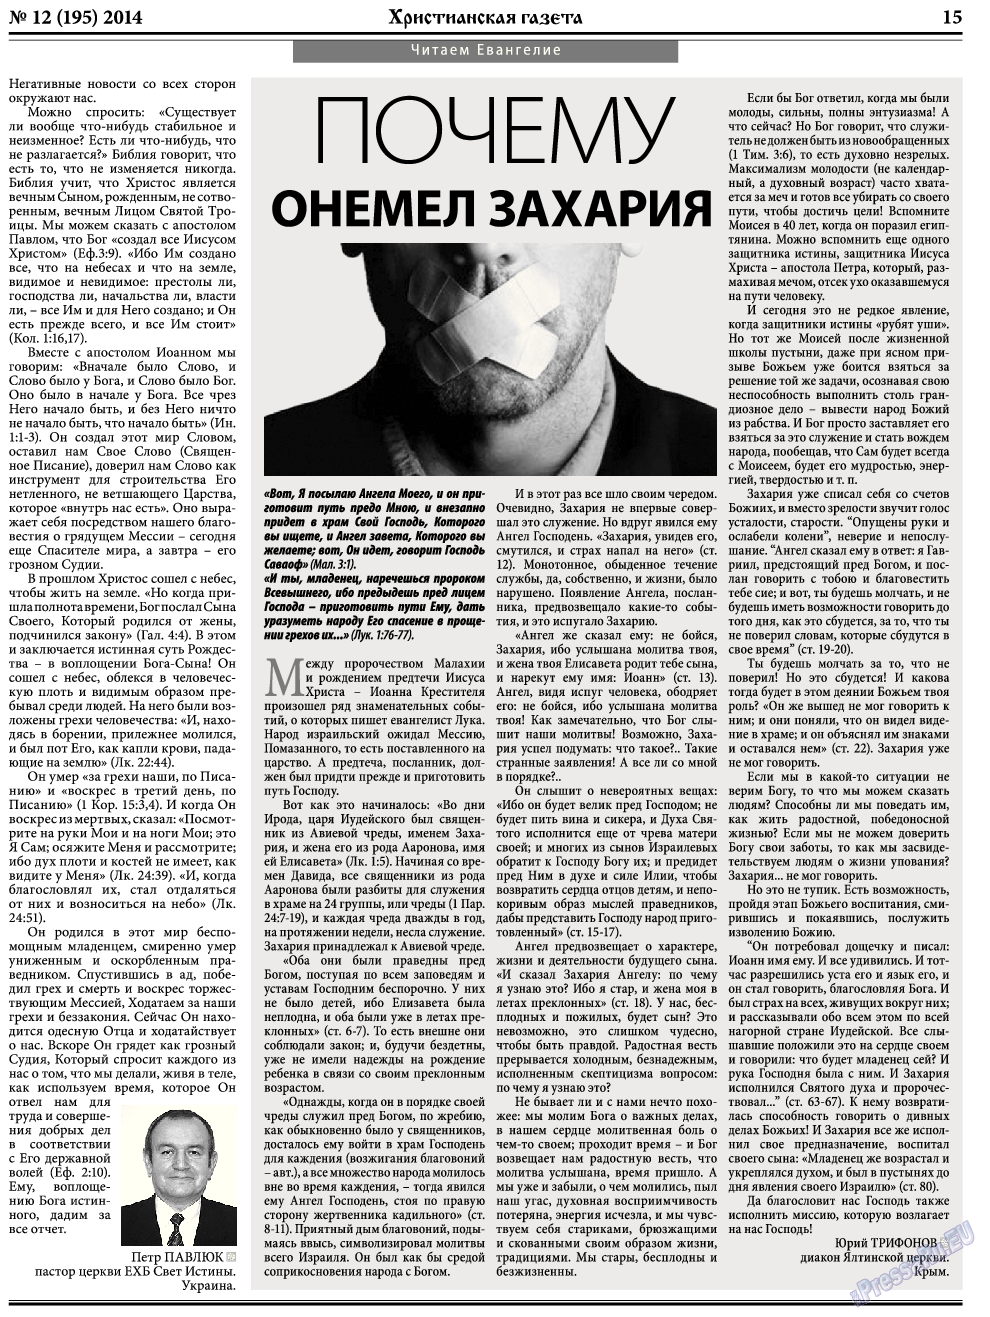 Христианская газета, газета. 2014 №12 стр.23